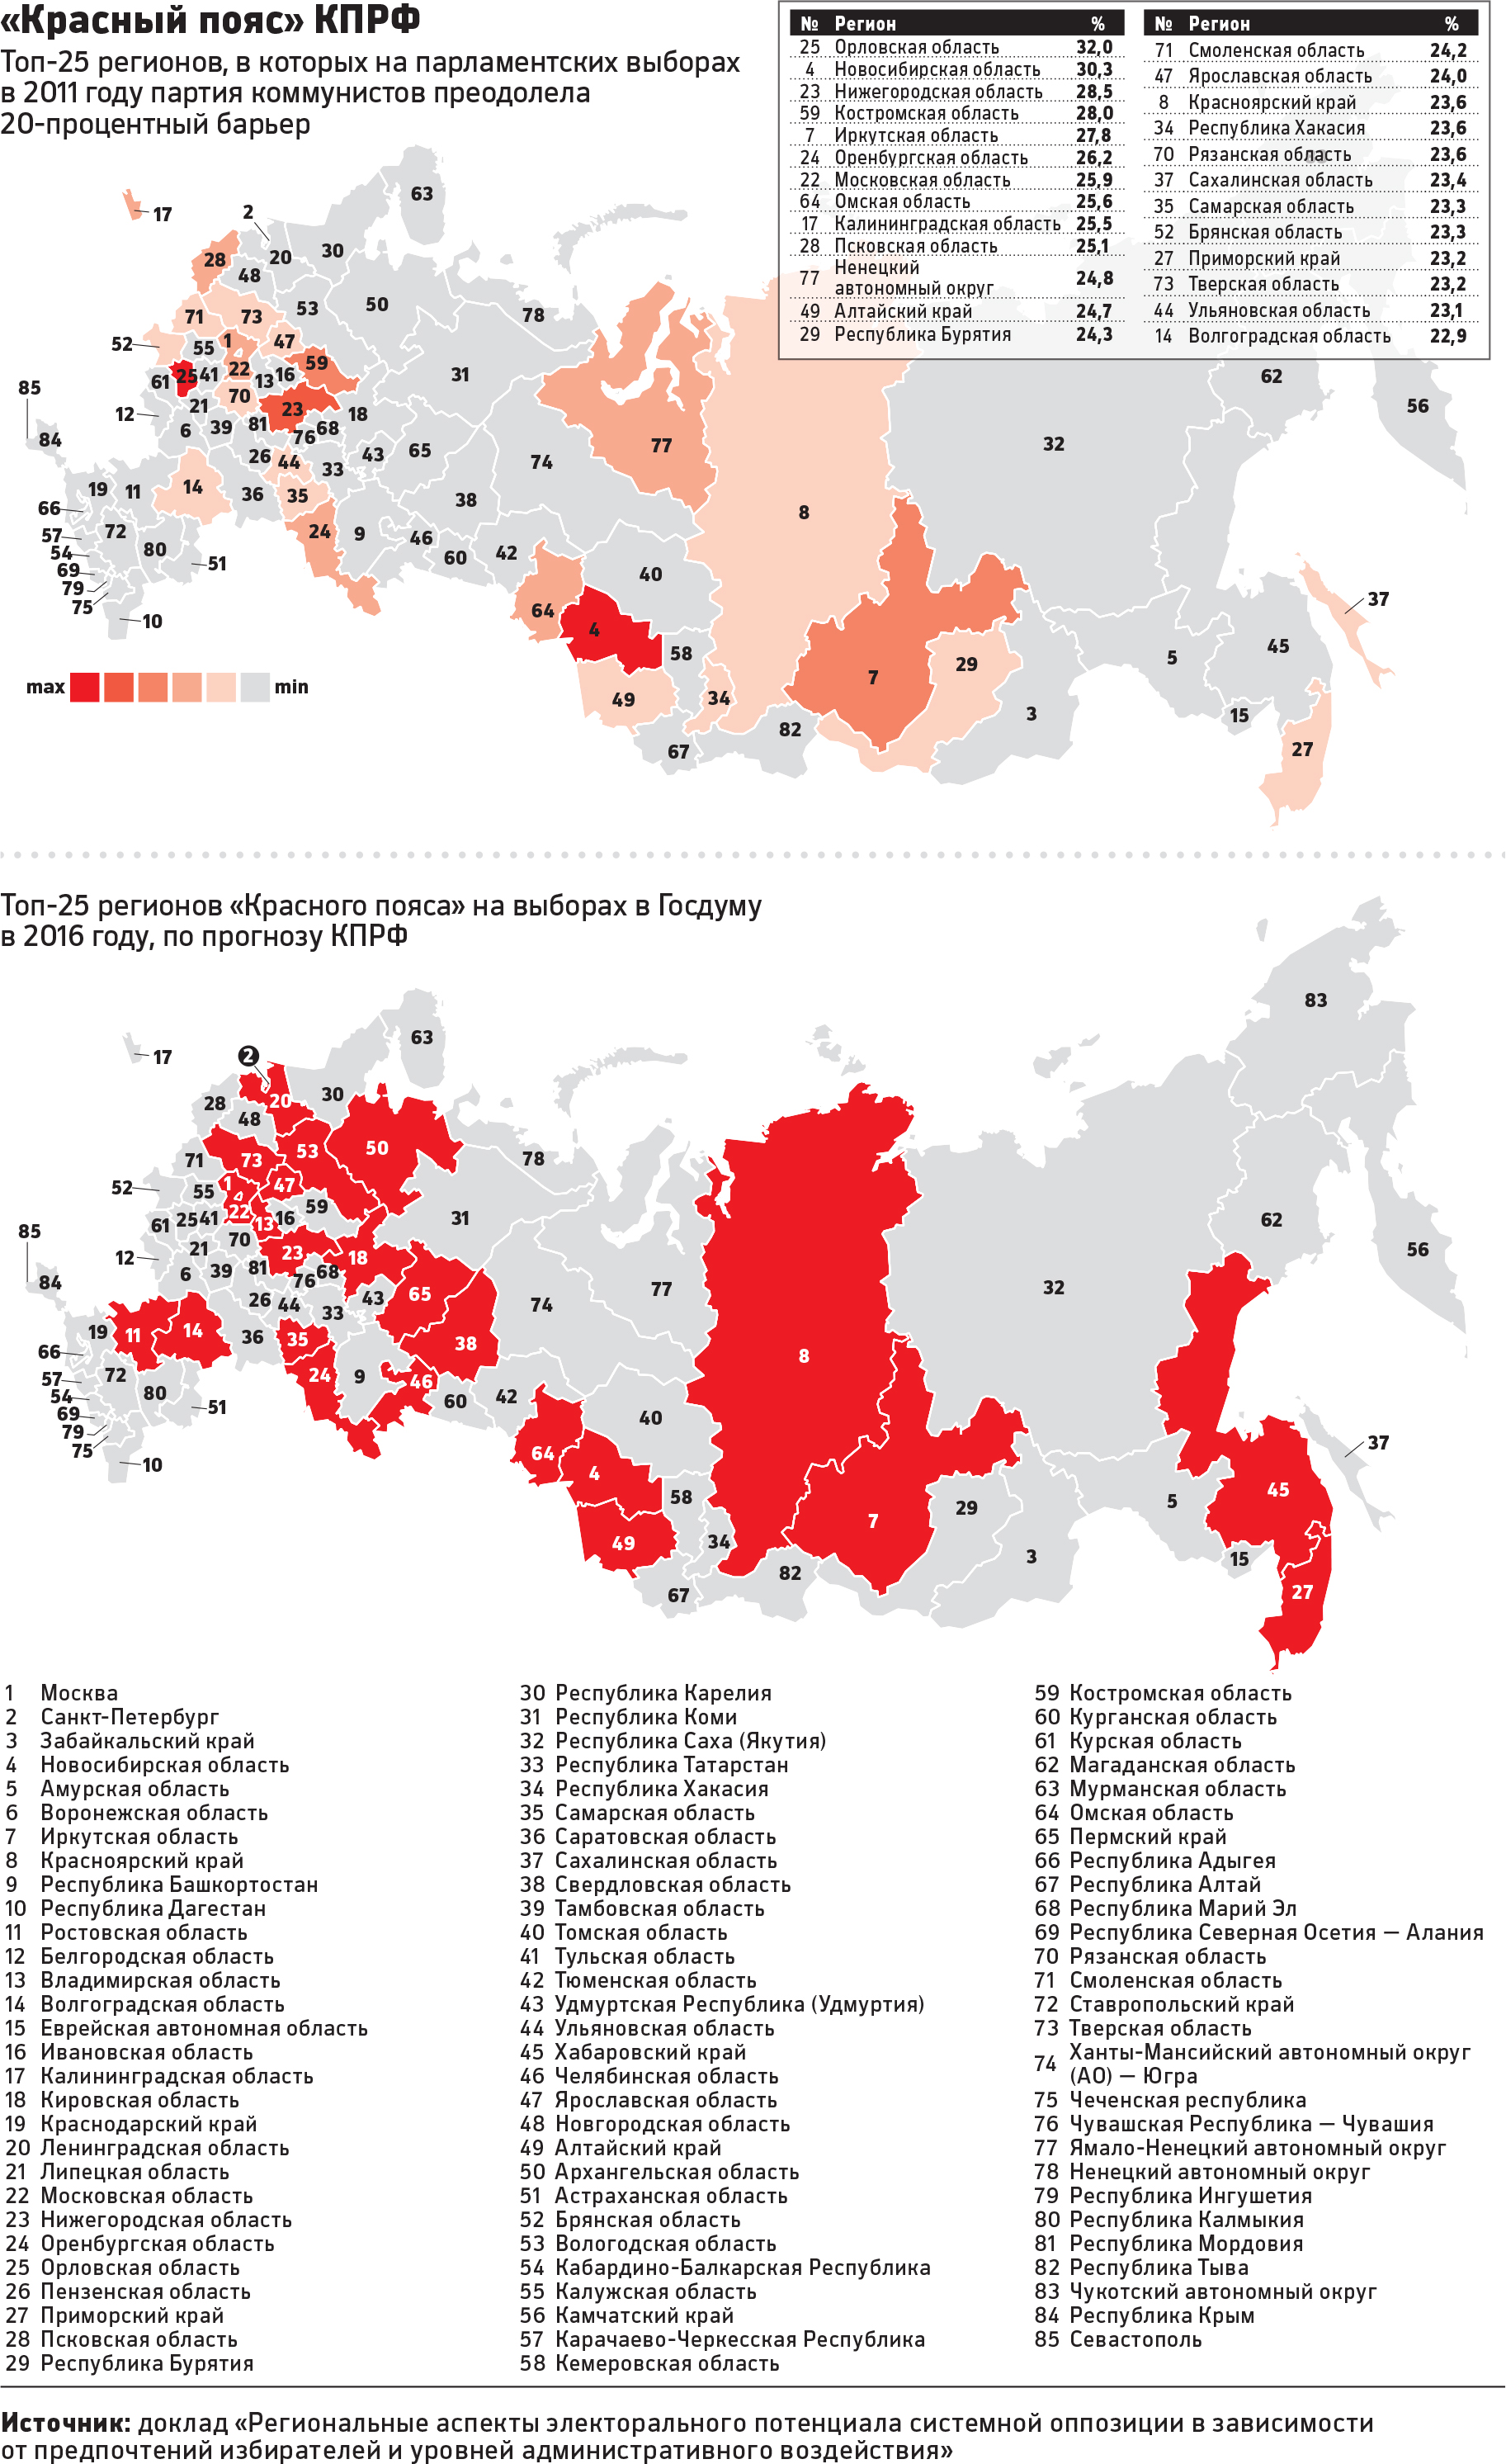 КПРФ перед выборами Госдумы нашла в регионах «красный пояс»